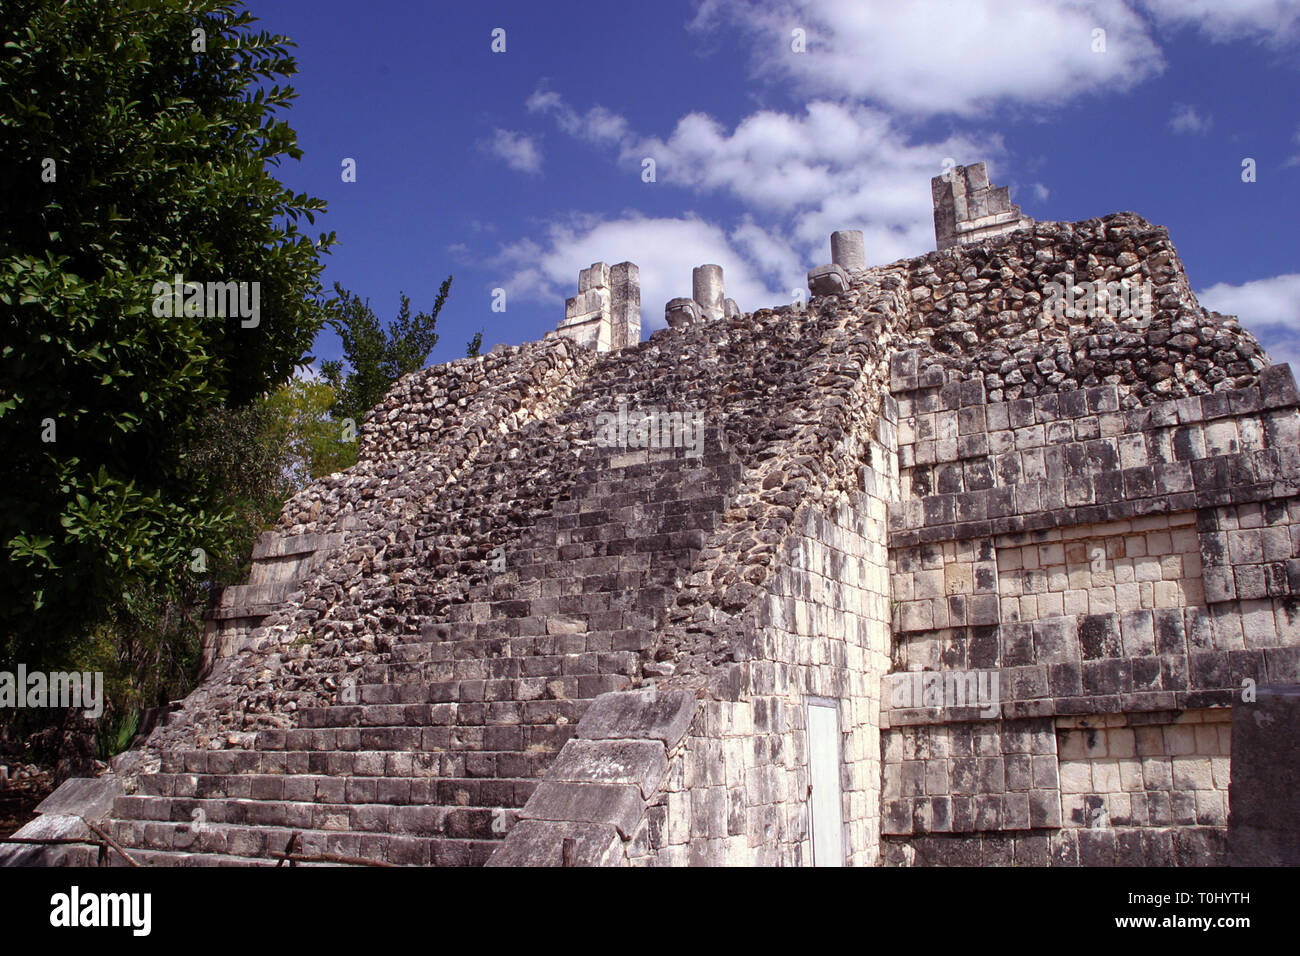 Zona arqueologica de Chichen Itza Zona arqueológica    Chichén ItzáChichén Itzá maya: (Chichén) Boca del pozo;   de los (Itzá) brujos de agua.   Es uno de los principales sitios arqueológicos de la   península de Yucatán, en México, ubicado en el municipio de Tinum.  *Photo:*©Francisco* Morales/DAMMPHOTO.COM/NORTEPHOTO  * No * sale * a * third * Stock Photo